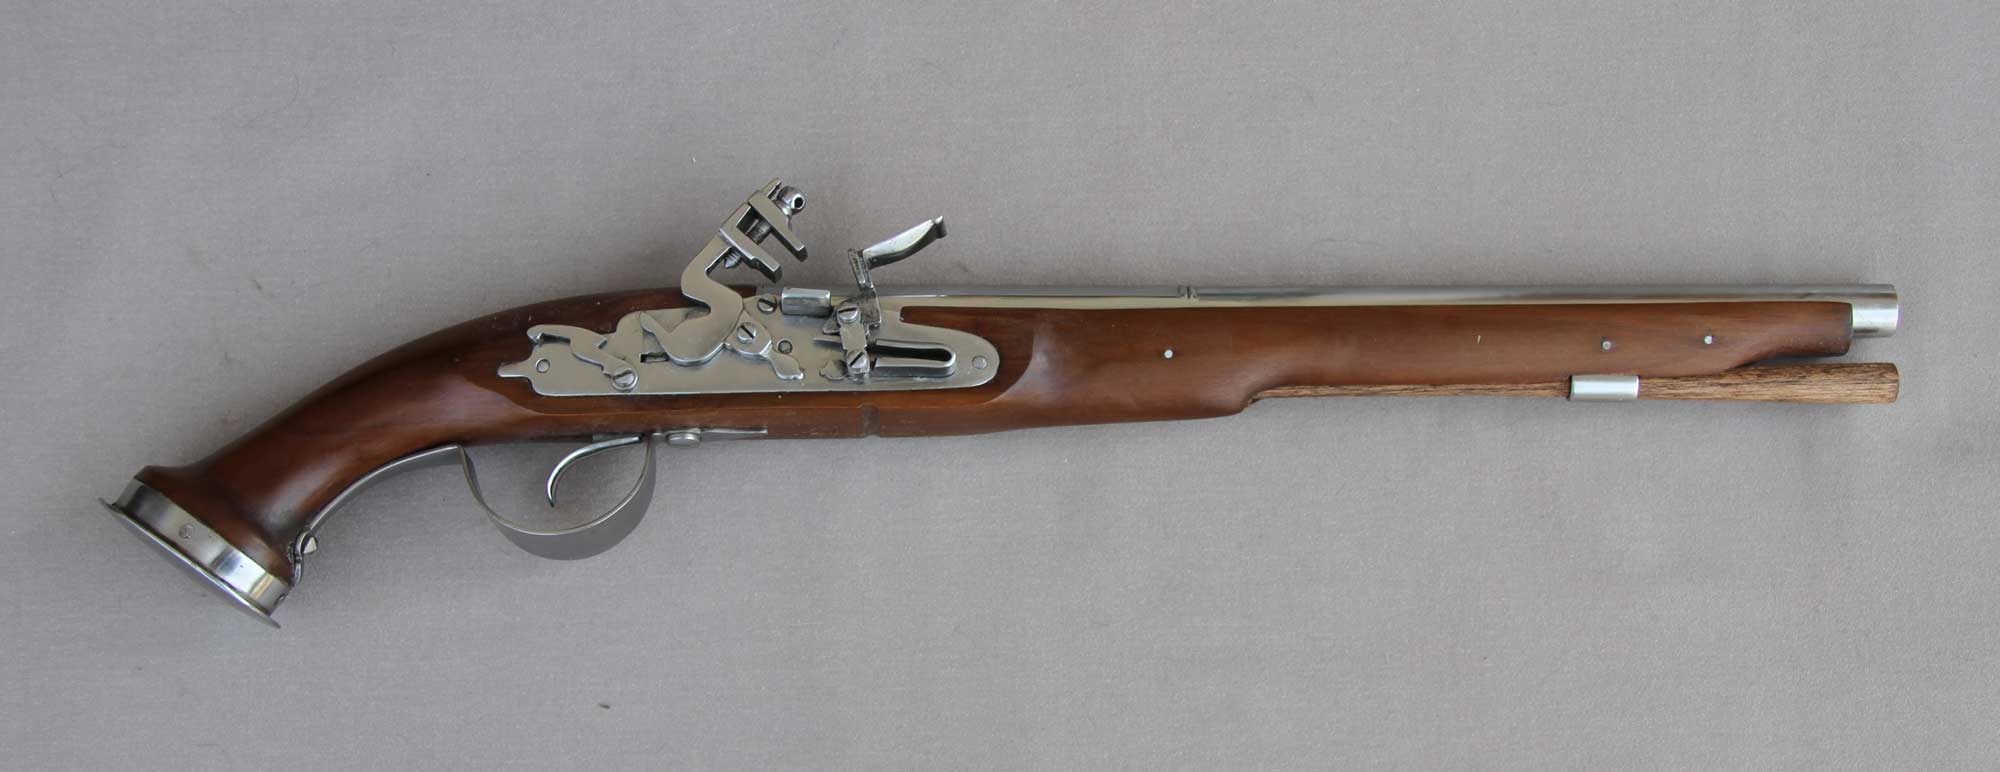 British, Dog Lock pistol